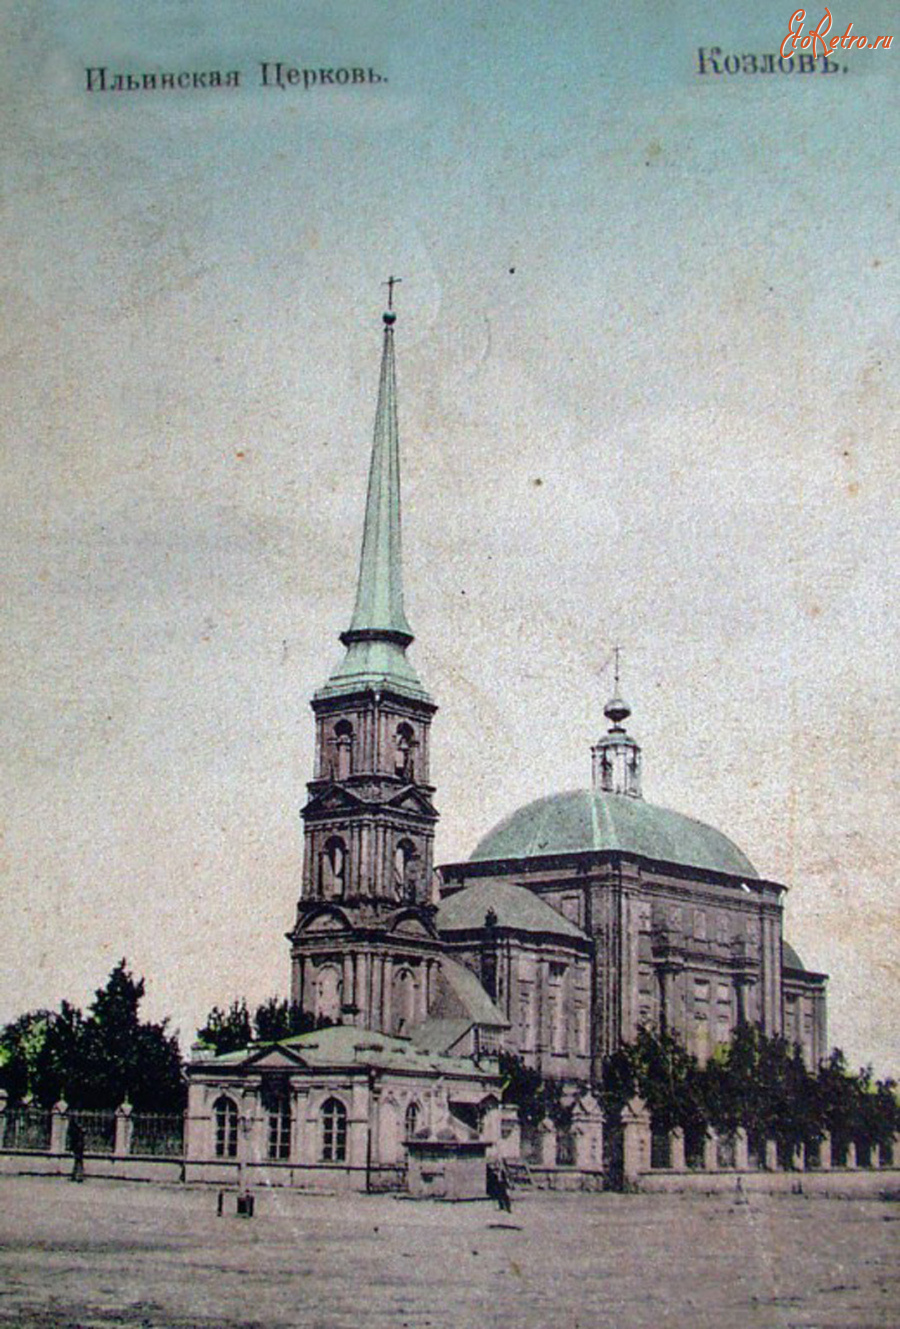 Мичуринск - Козлов, Ильинская церковь